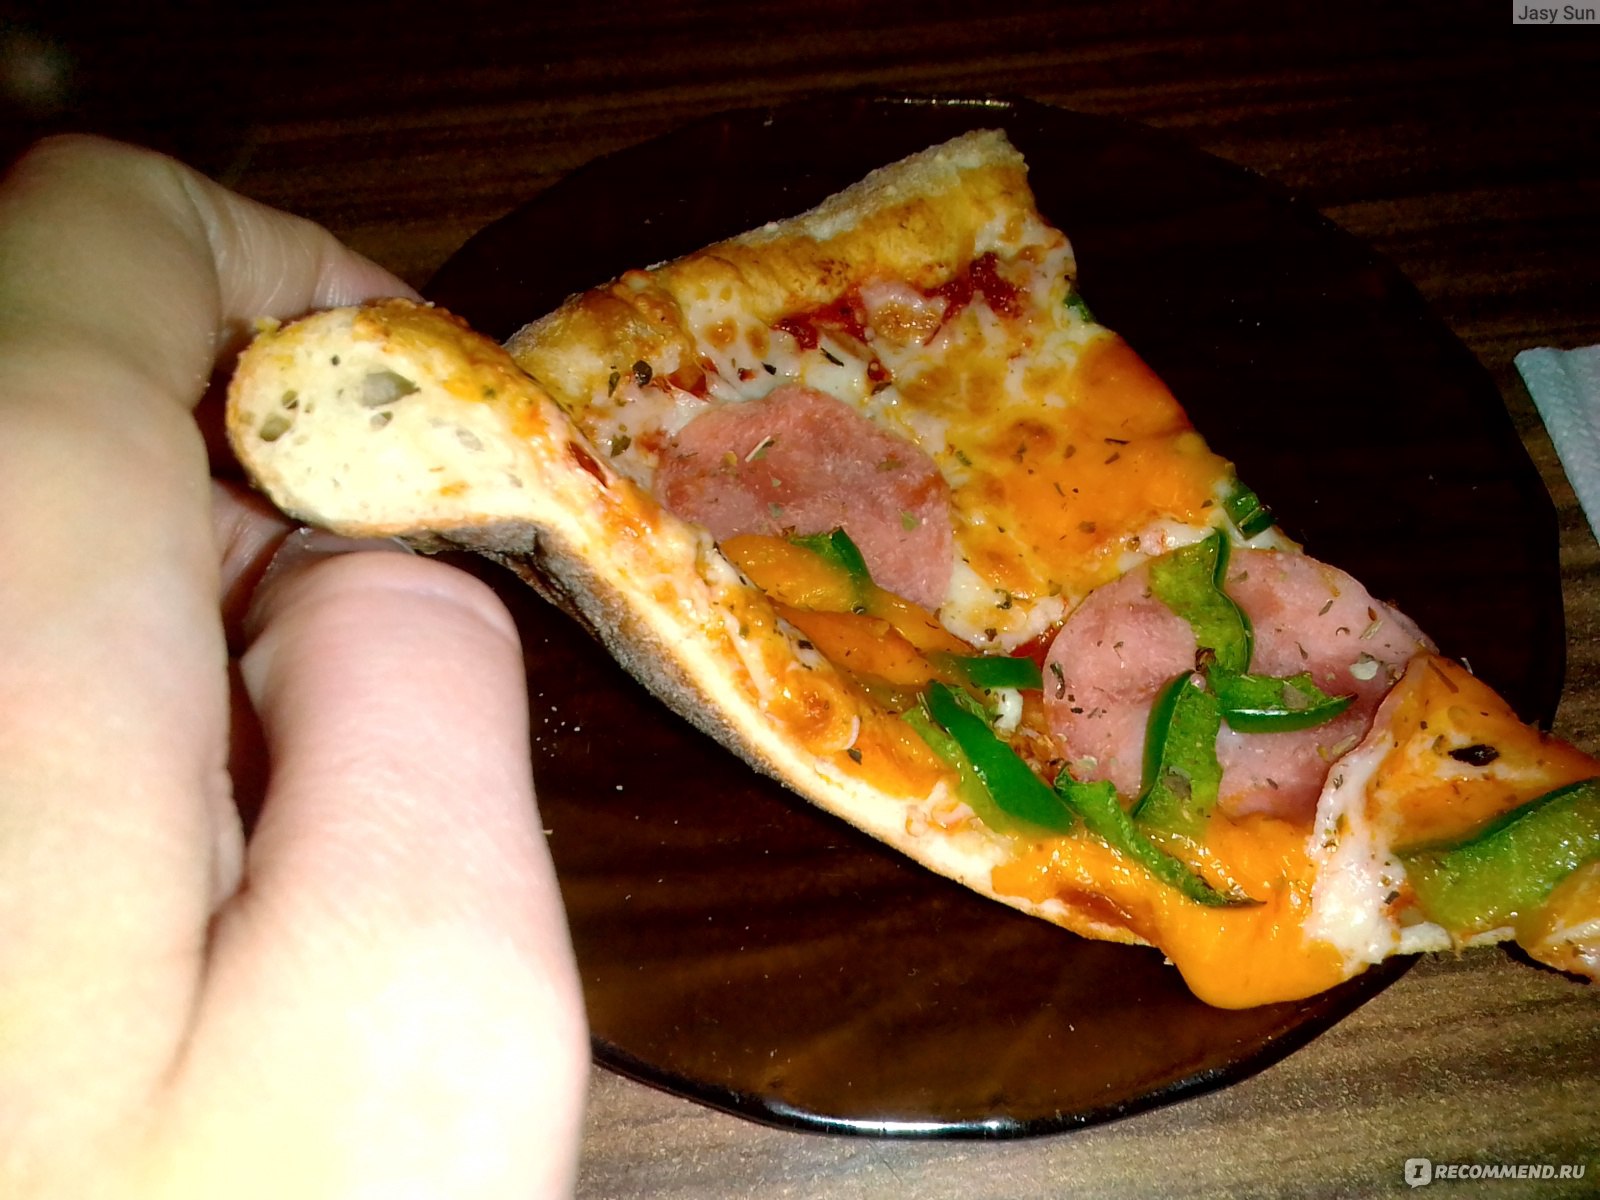 додо пицца соус сырный фото 83